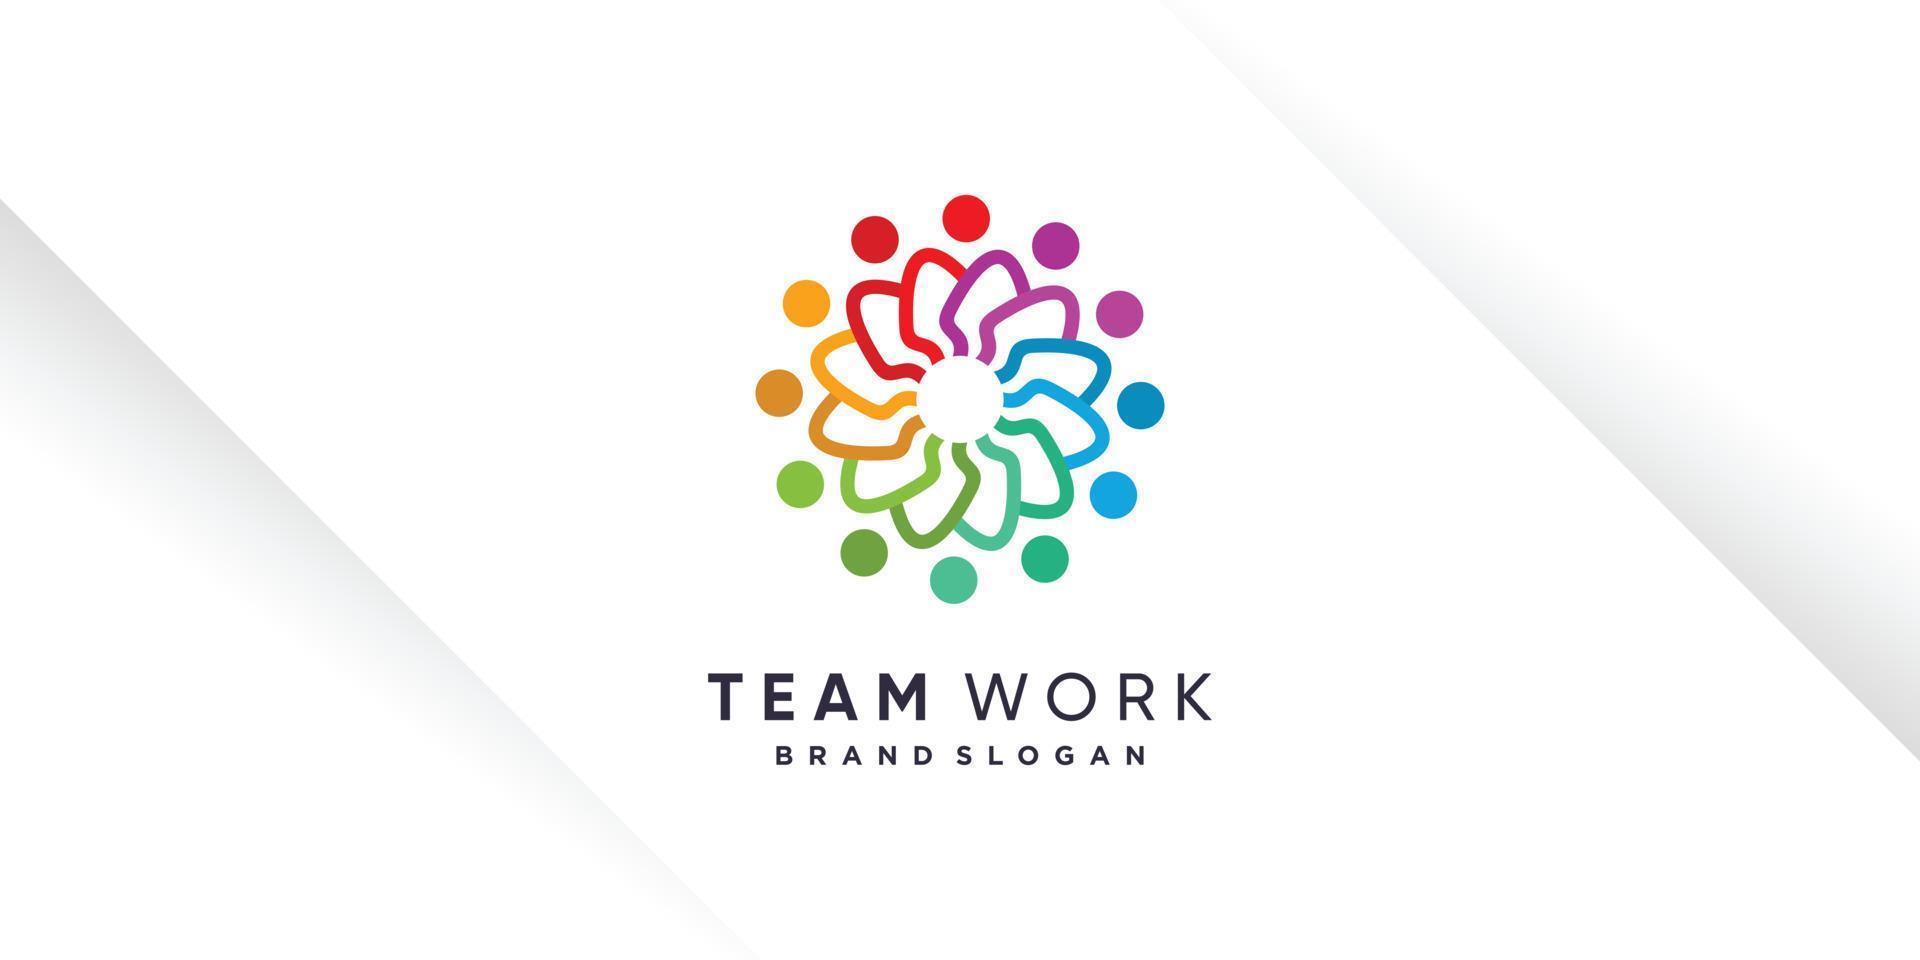 vetor de design de logotipo de trabalho em equipe com estilo único para caridade, humanidade, comunidade ou grupo